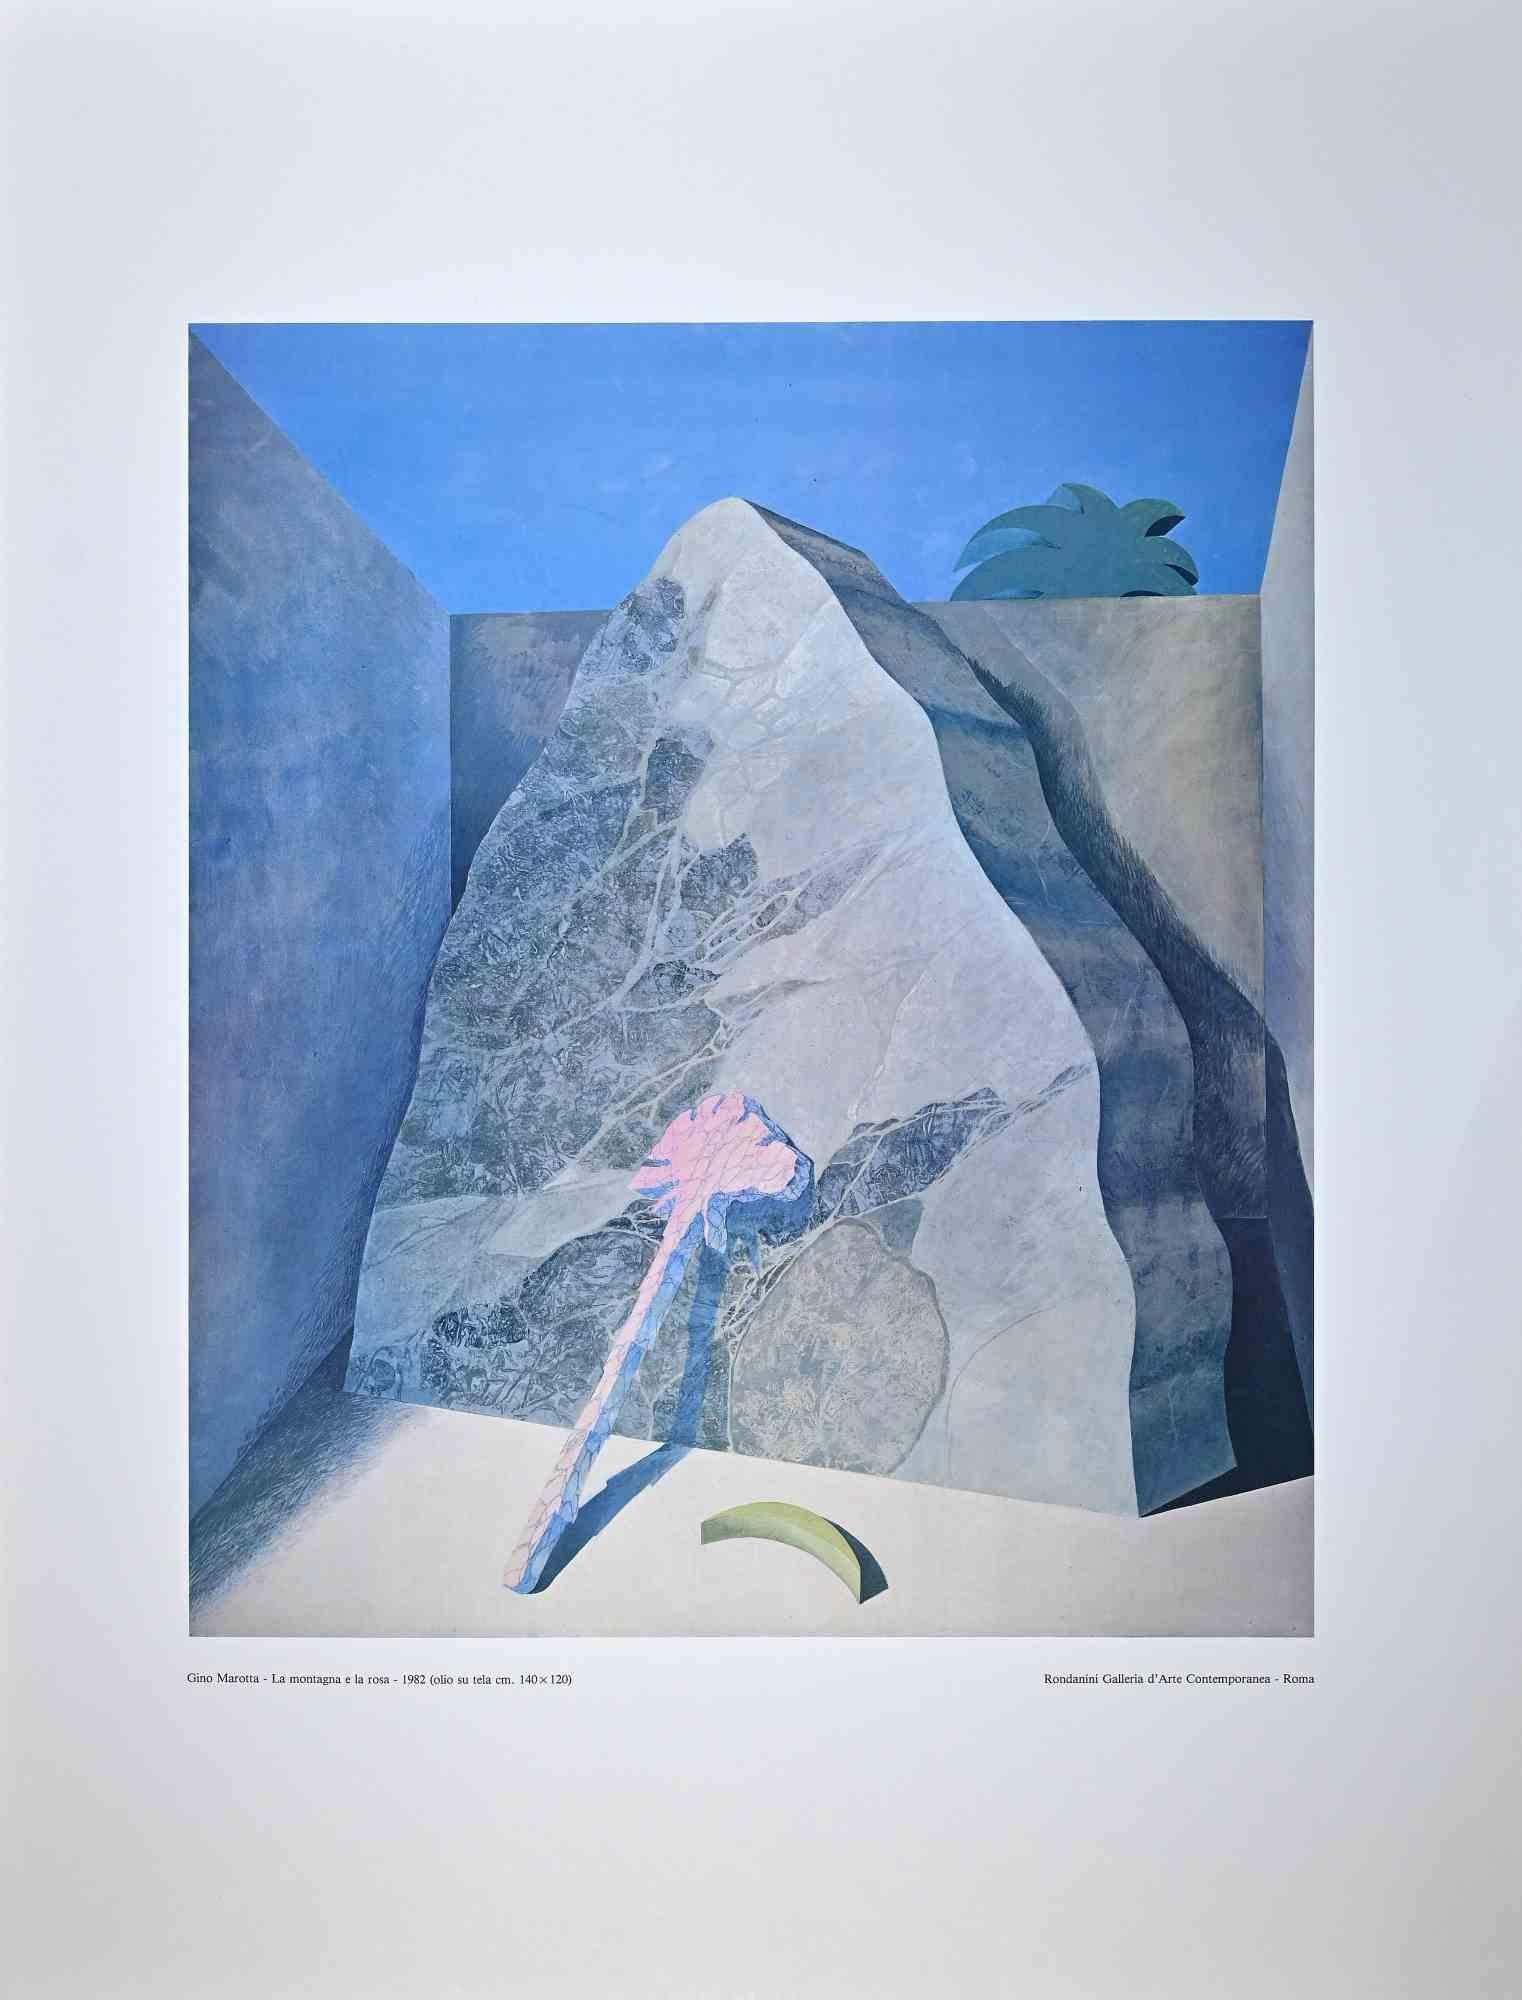 The Mountain and the Rose – The Mountain and the Rose – Vintage-Poster nach G. Marotta – 1982